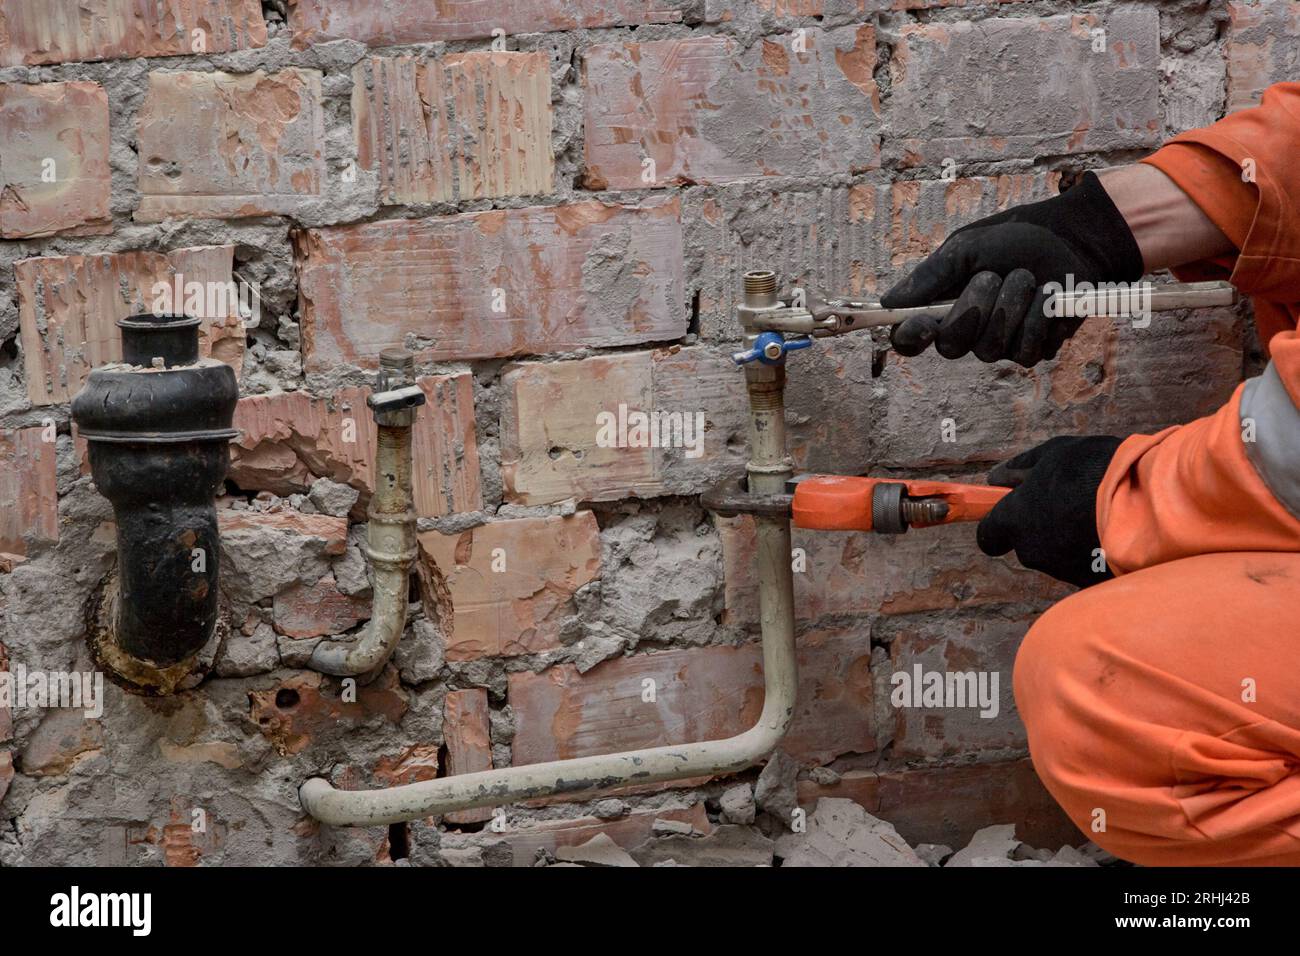 Befestigung des undichten Wasserventils durch den Bauunternehmer mit Handschuhen und orangefarbenen Overalls. Stockfoto